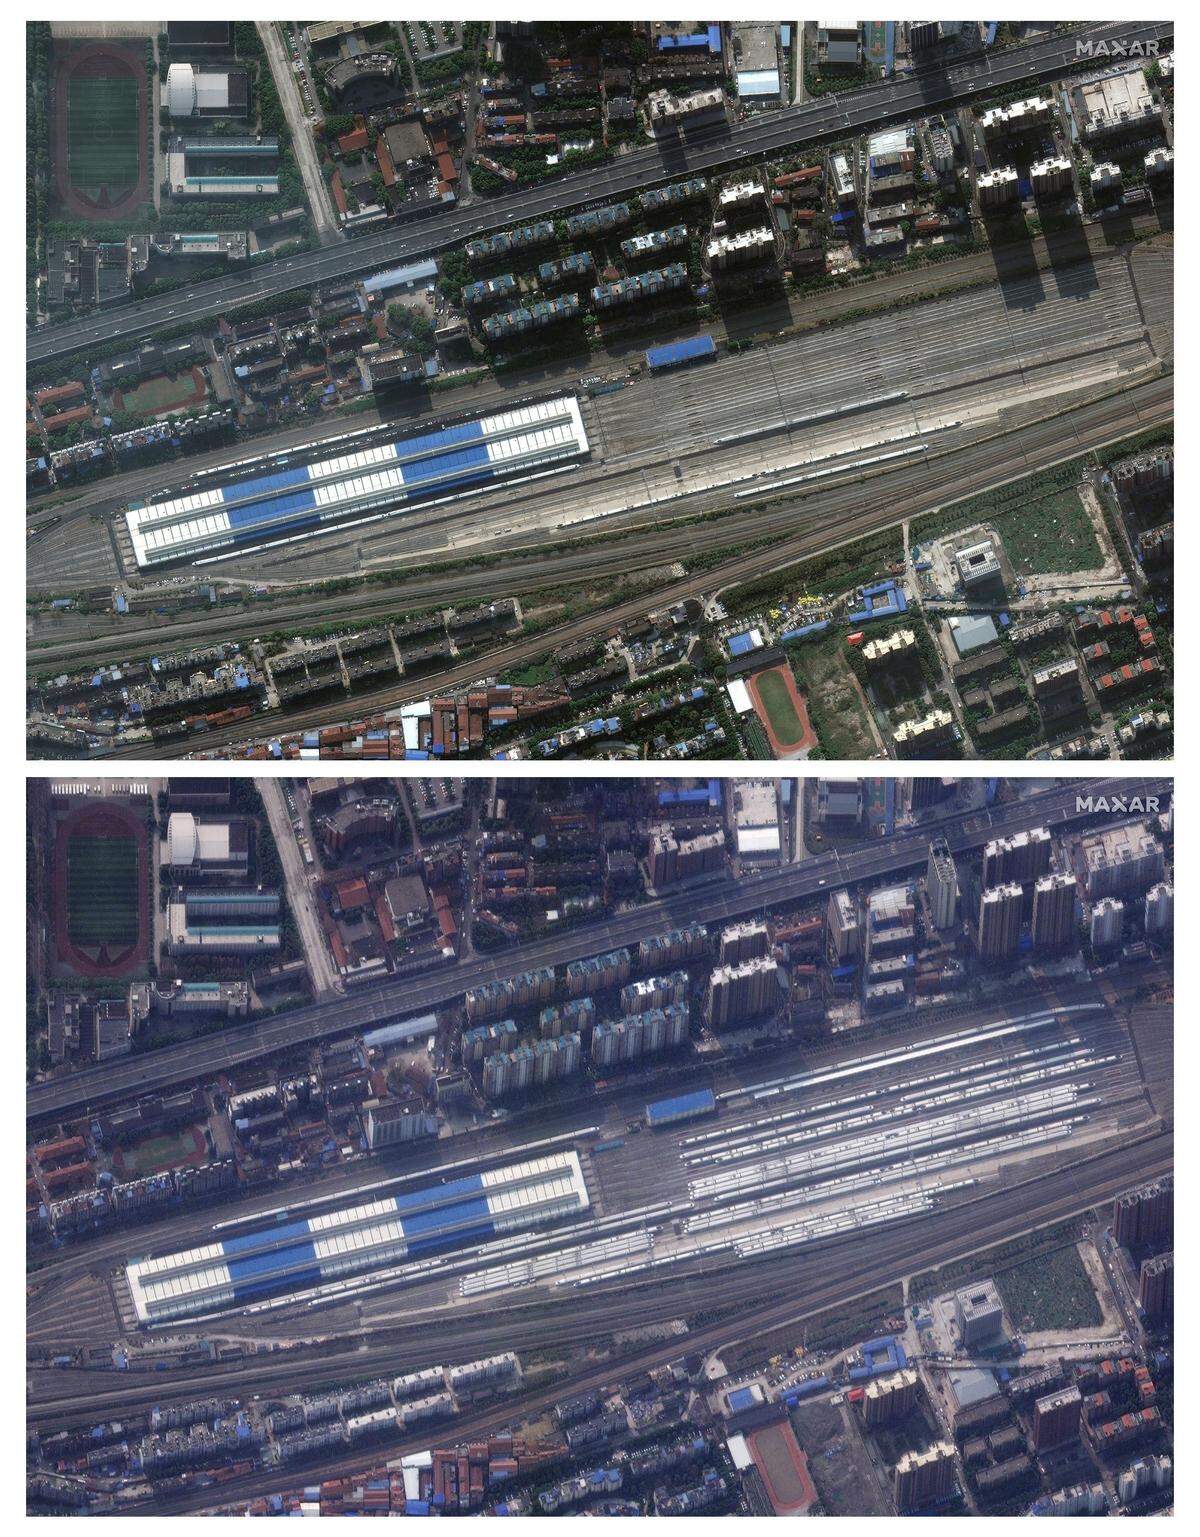 Auch bei diesem Bahnhof in Wuhan, ist der Unterschied deutlich erkennbar. Die weißen Zuggarnituren im rechten Teil des Bildes sind stark reduziert.